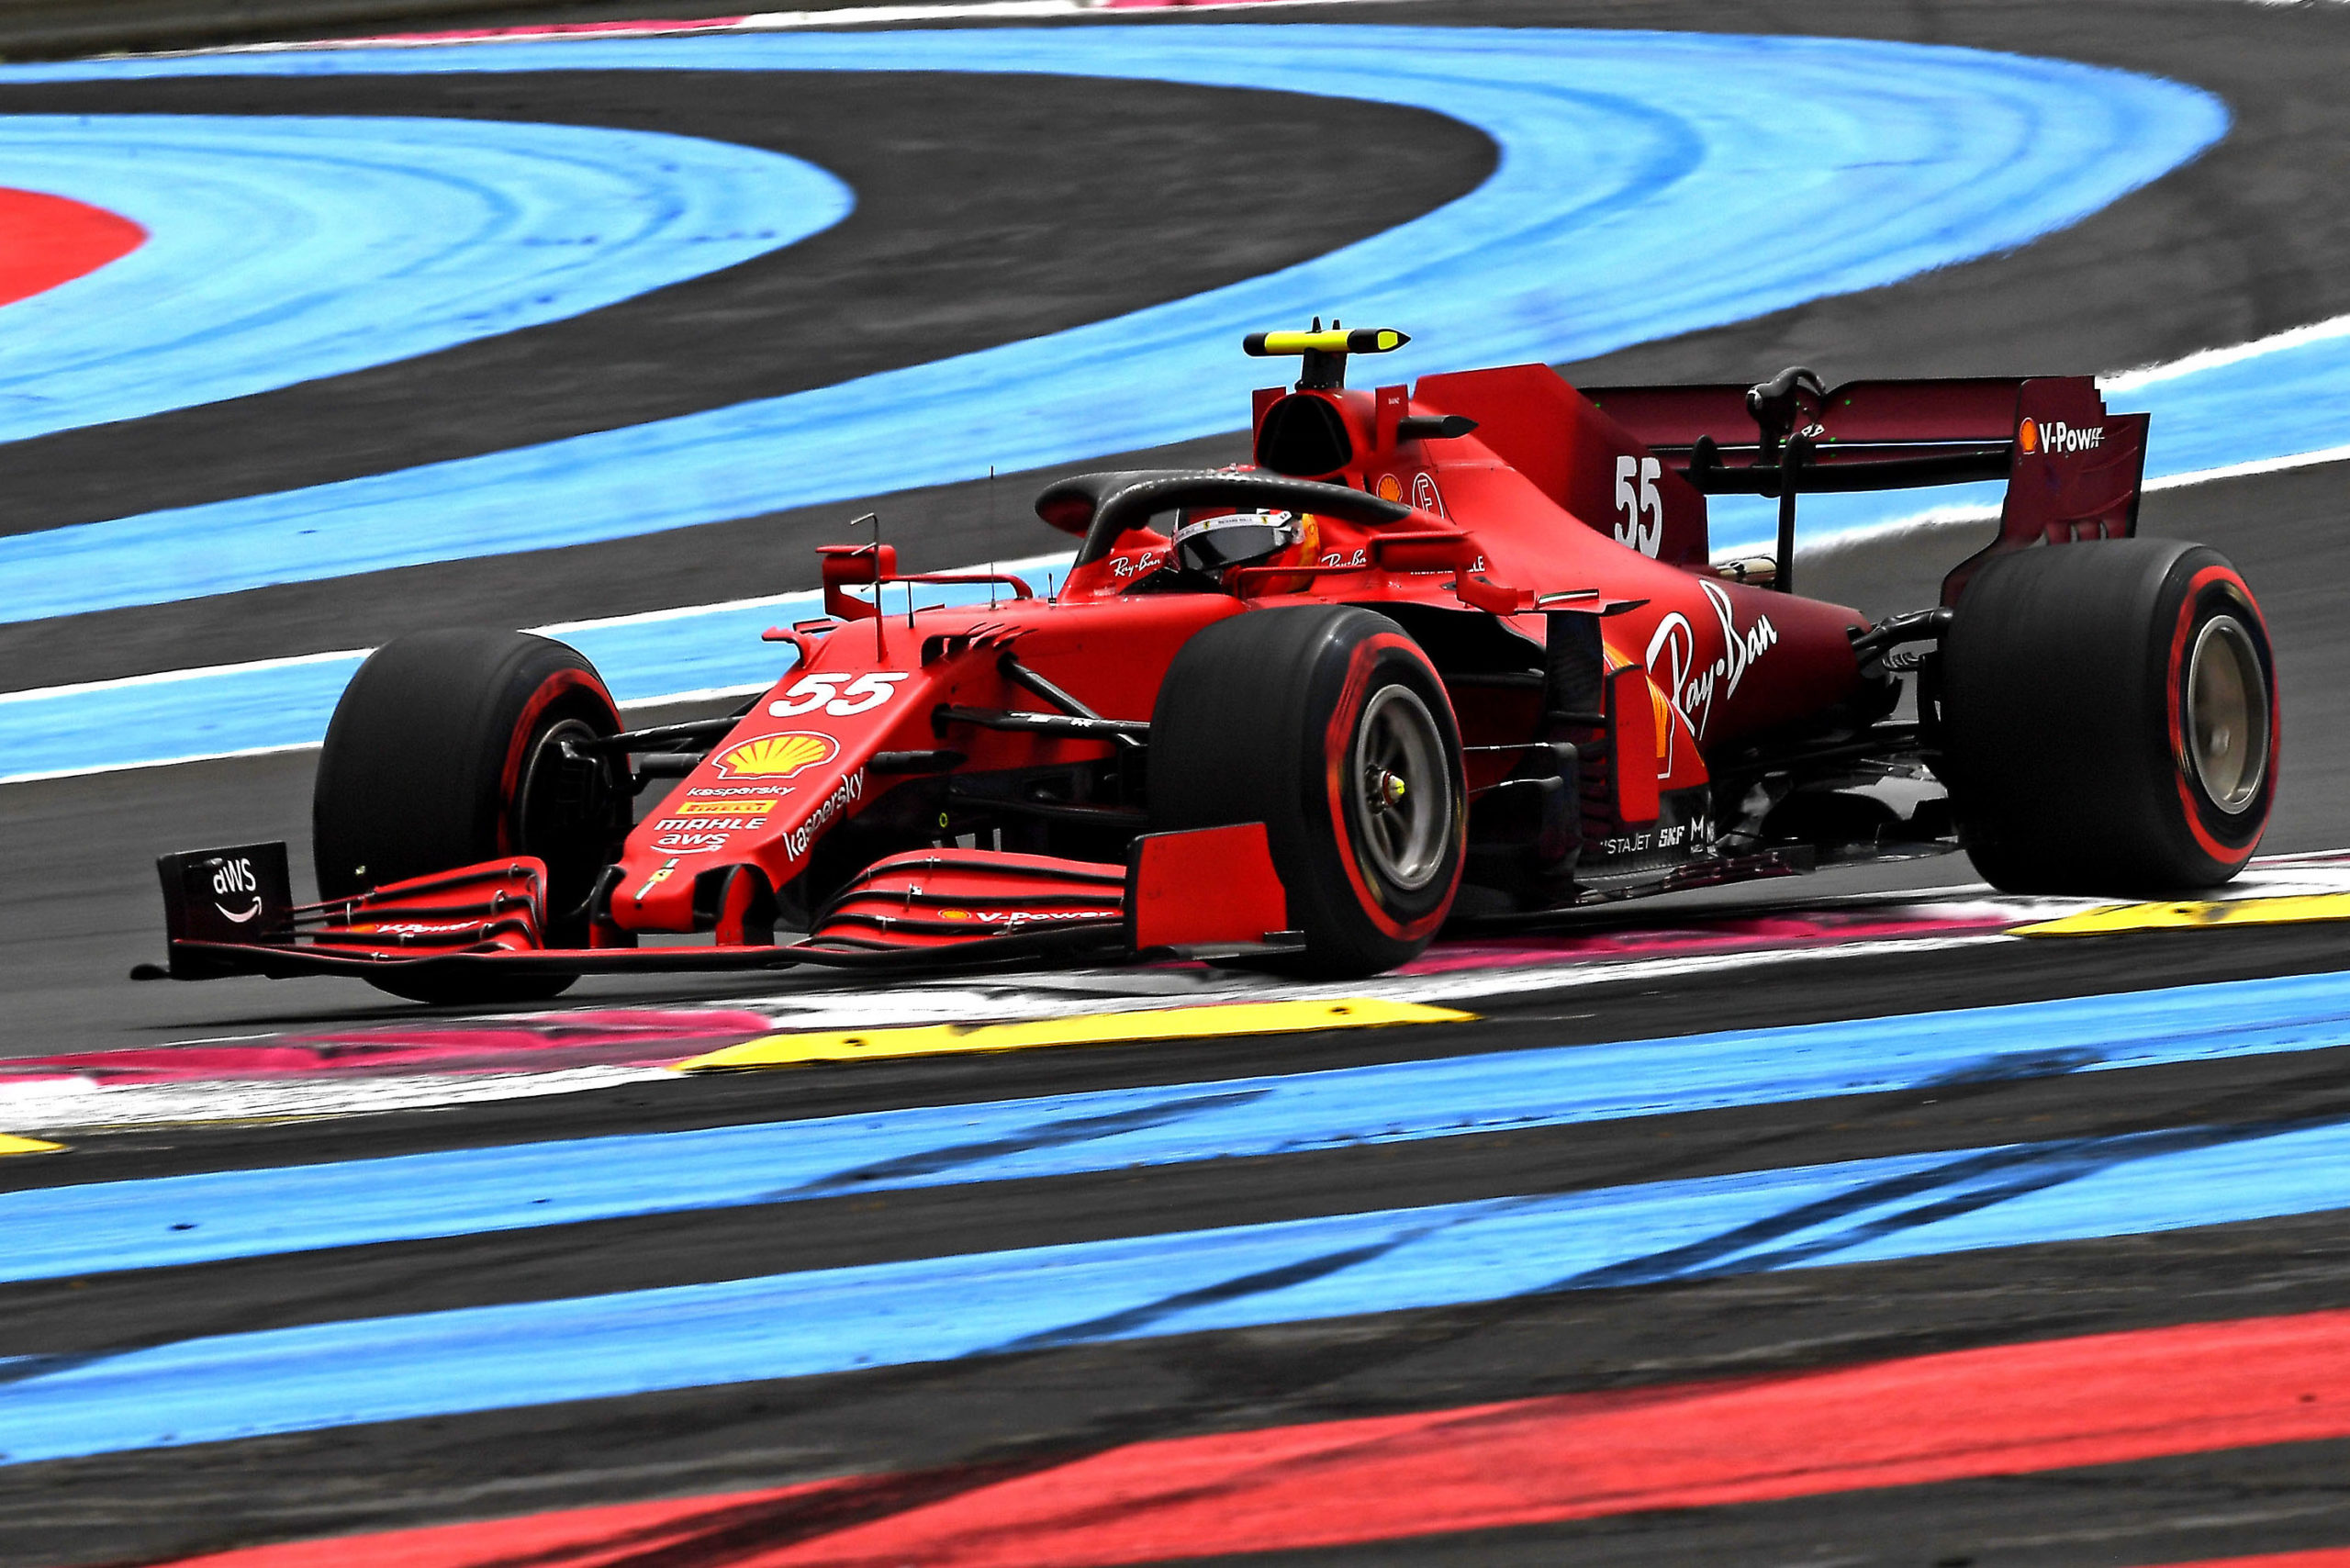 2021 French Grand Prix, Saturday - Carlos Sainz (image courtesy Scuderia Ferrari)